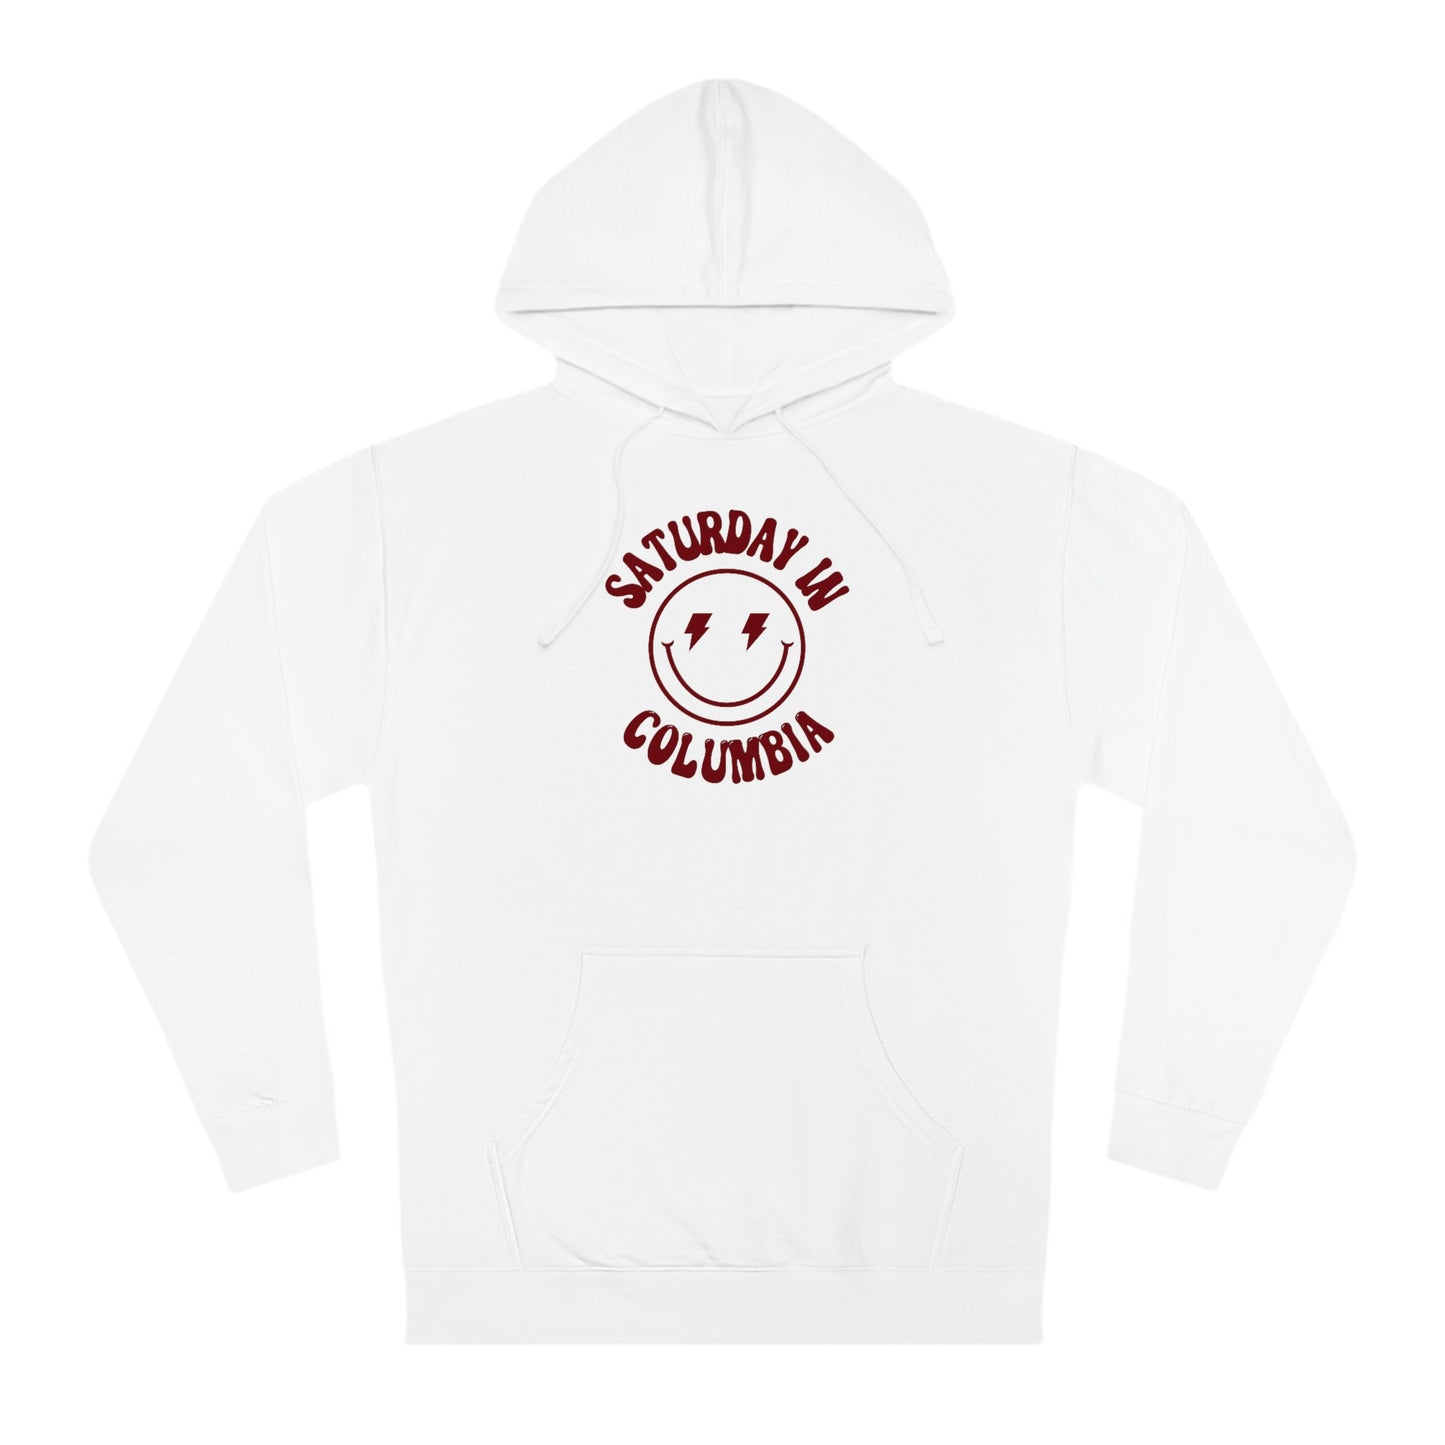 Smiley Columbia, SC Hooded Sweatshirt - GG - ITC